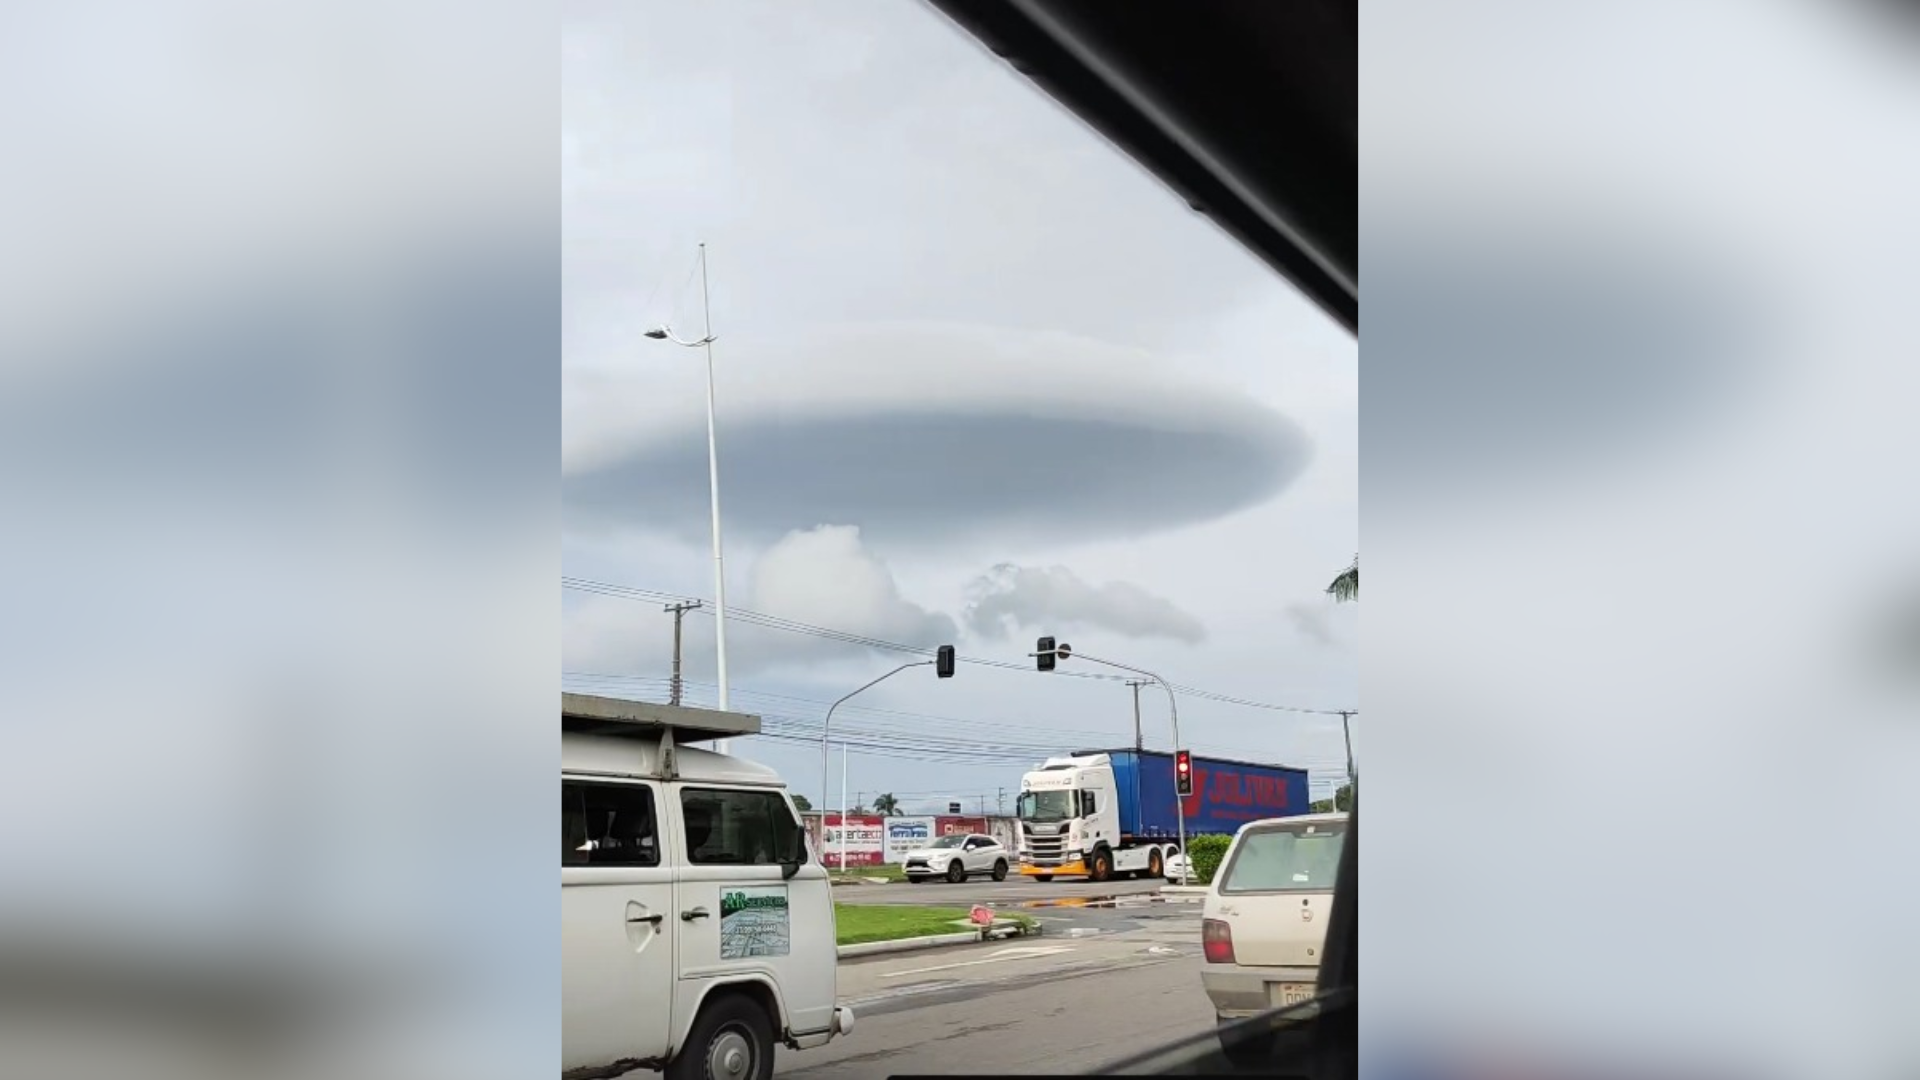 Apesar de ter o formato parecido com as naves extraterrestres retratadas no cinema, instituto de meteorologia diz que a nuvem é popularmente conhecida como 'prateleira'